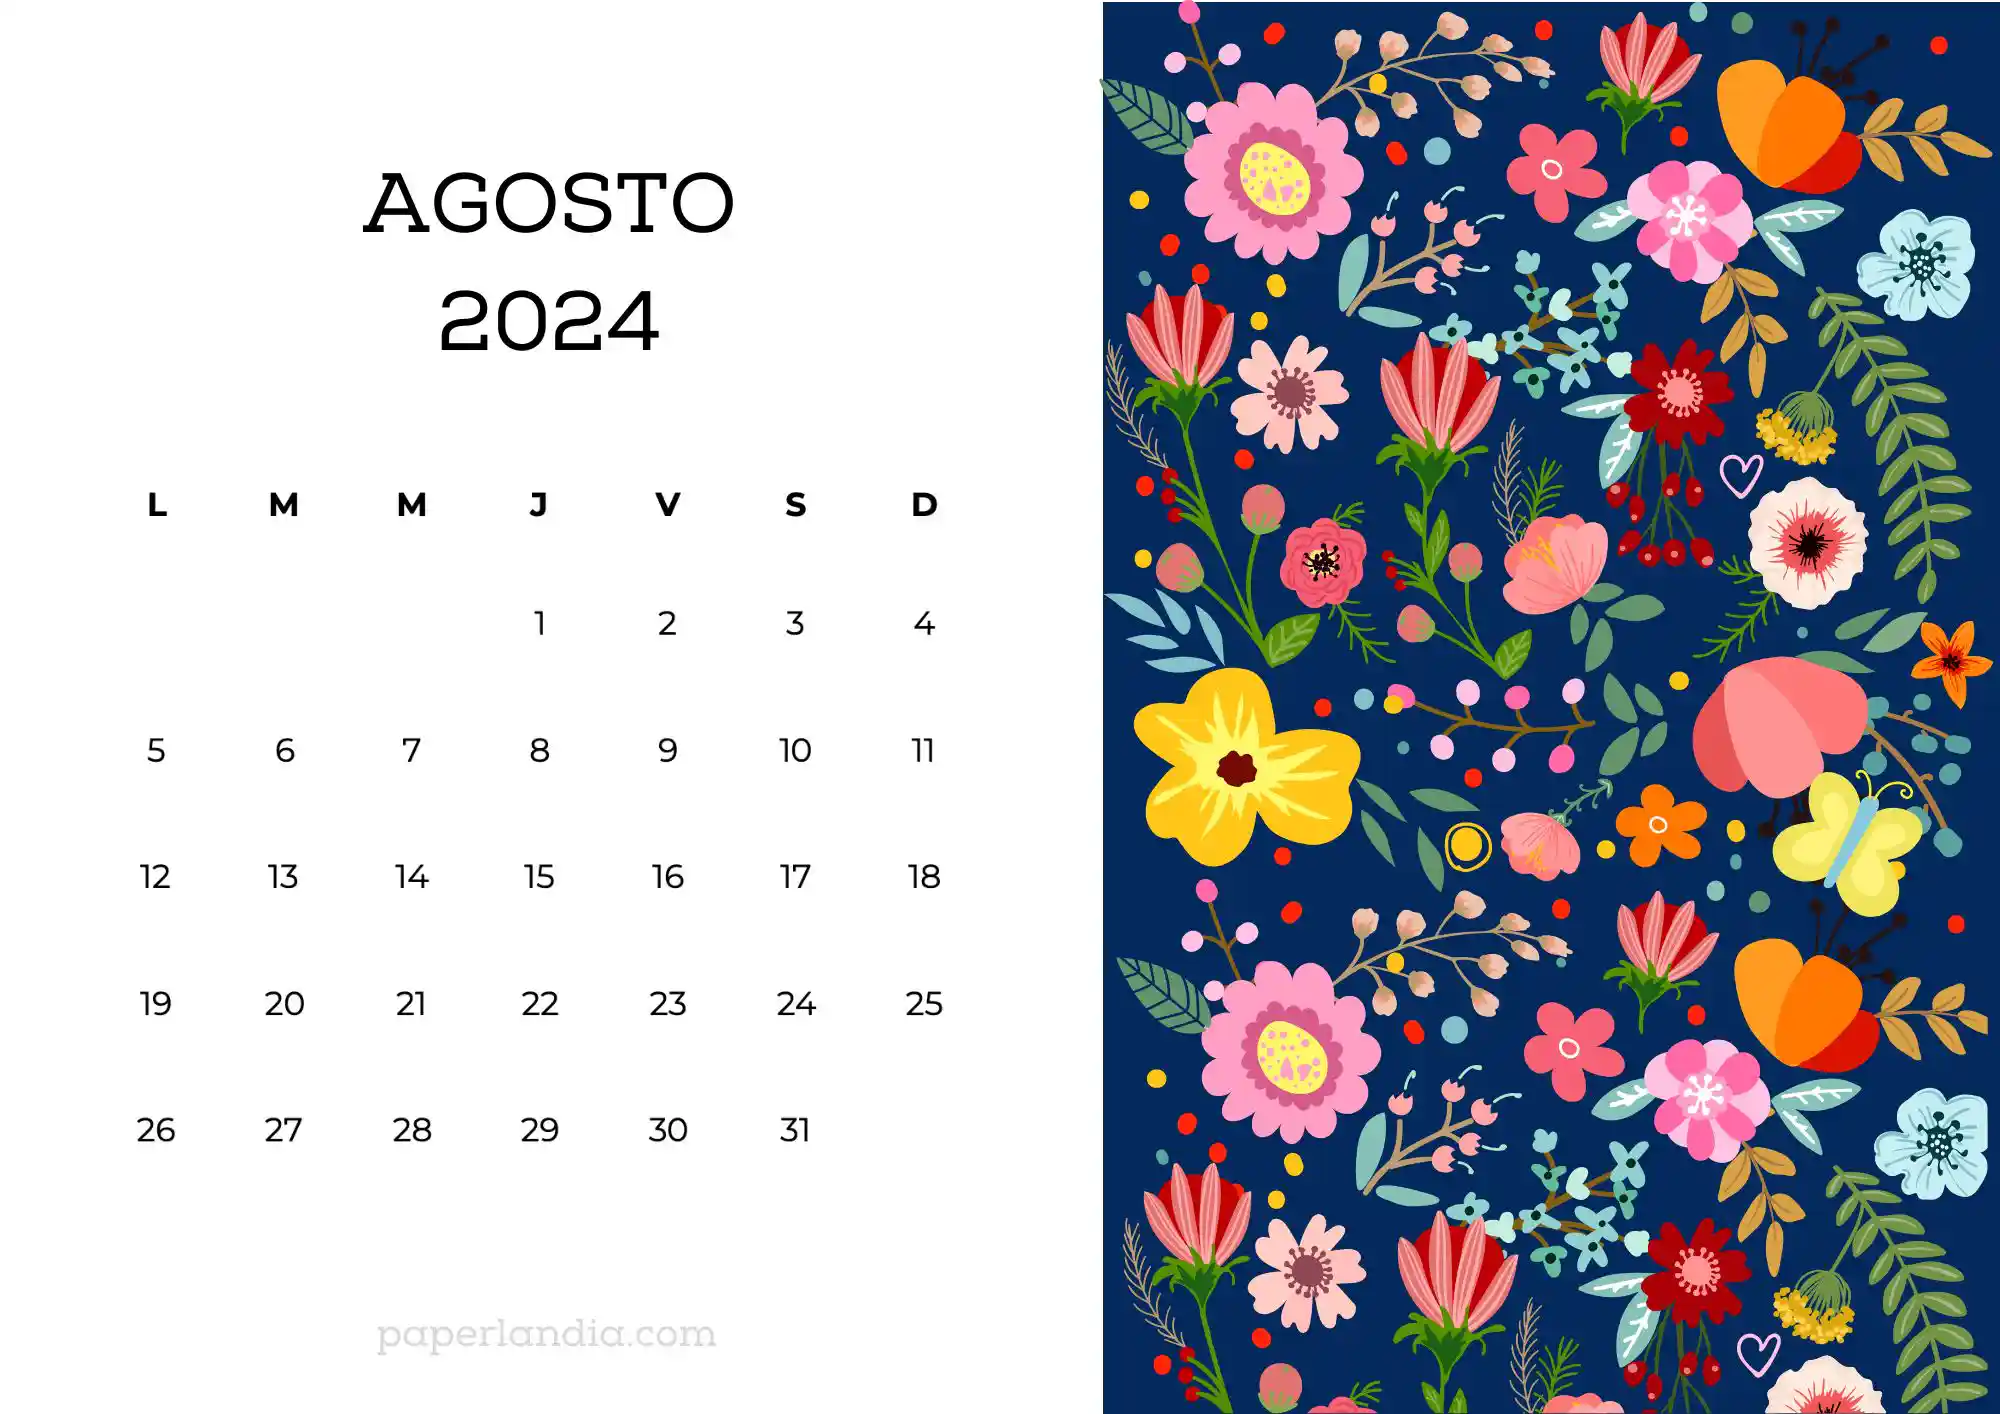 Calendario agosto 2024 horizontal con flores escandinavas fondo azul